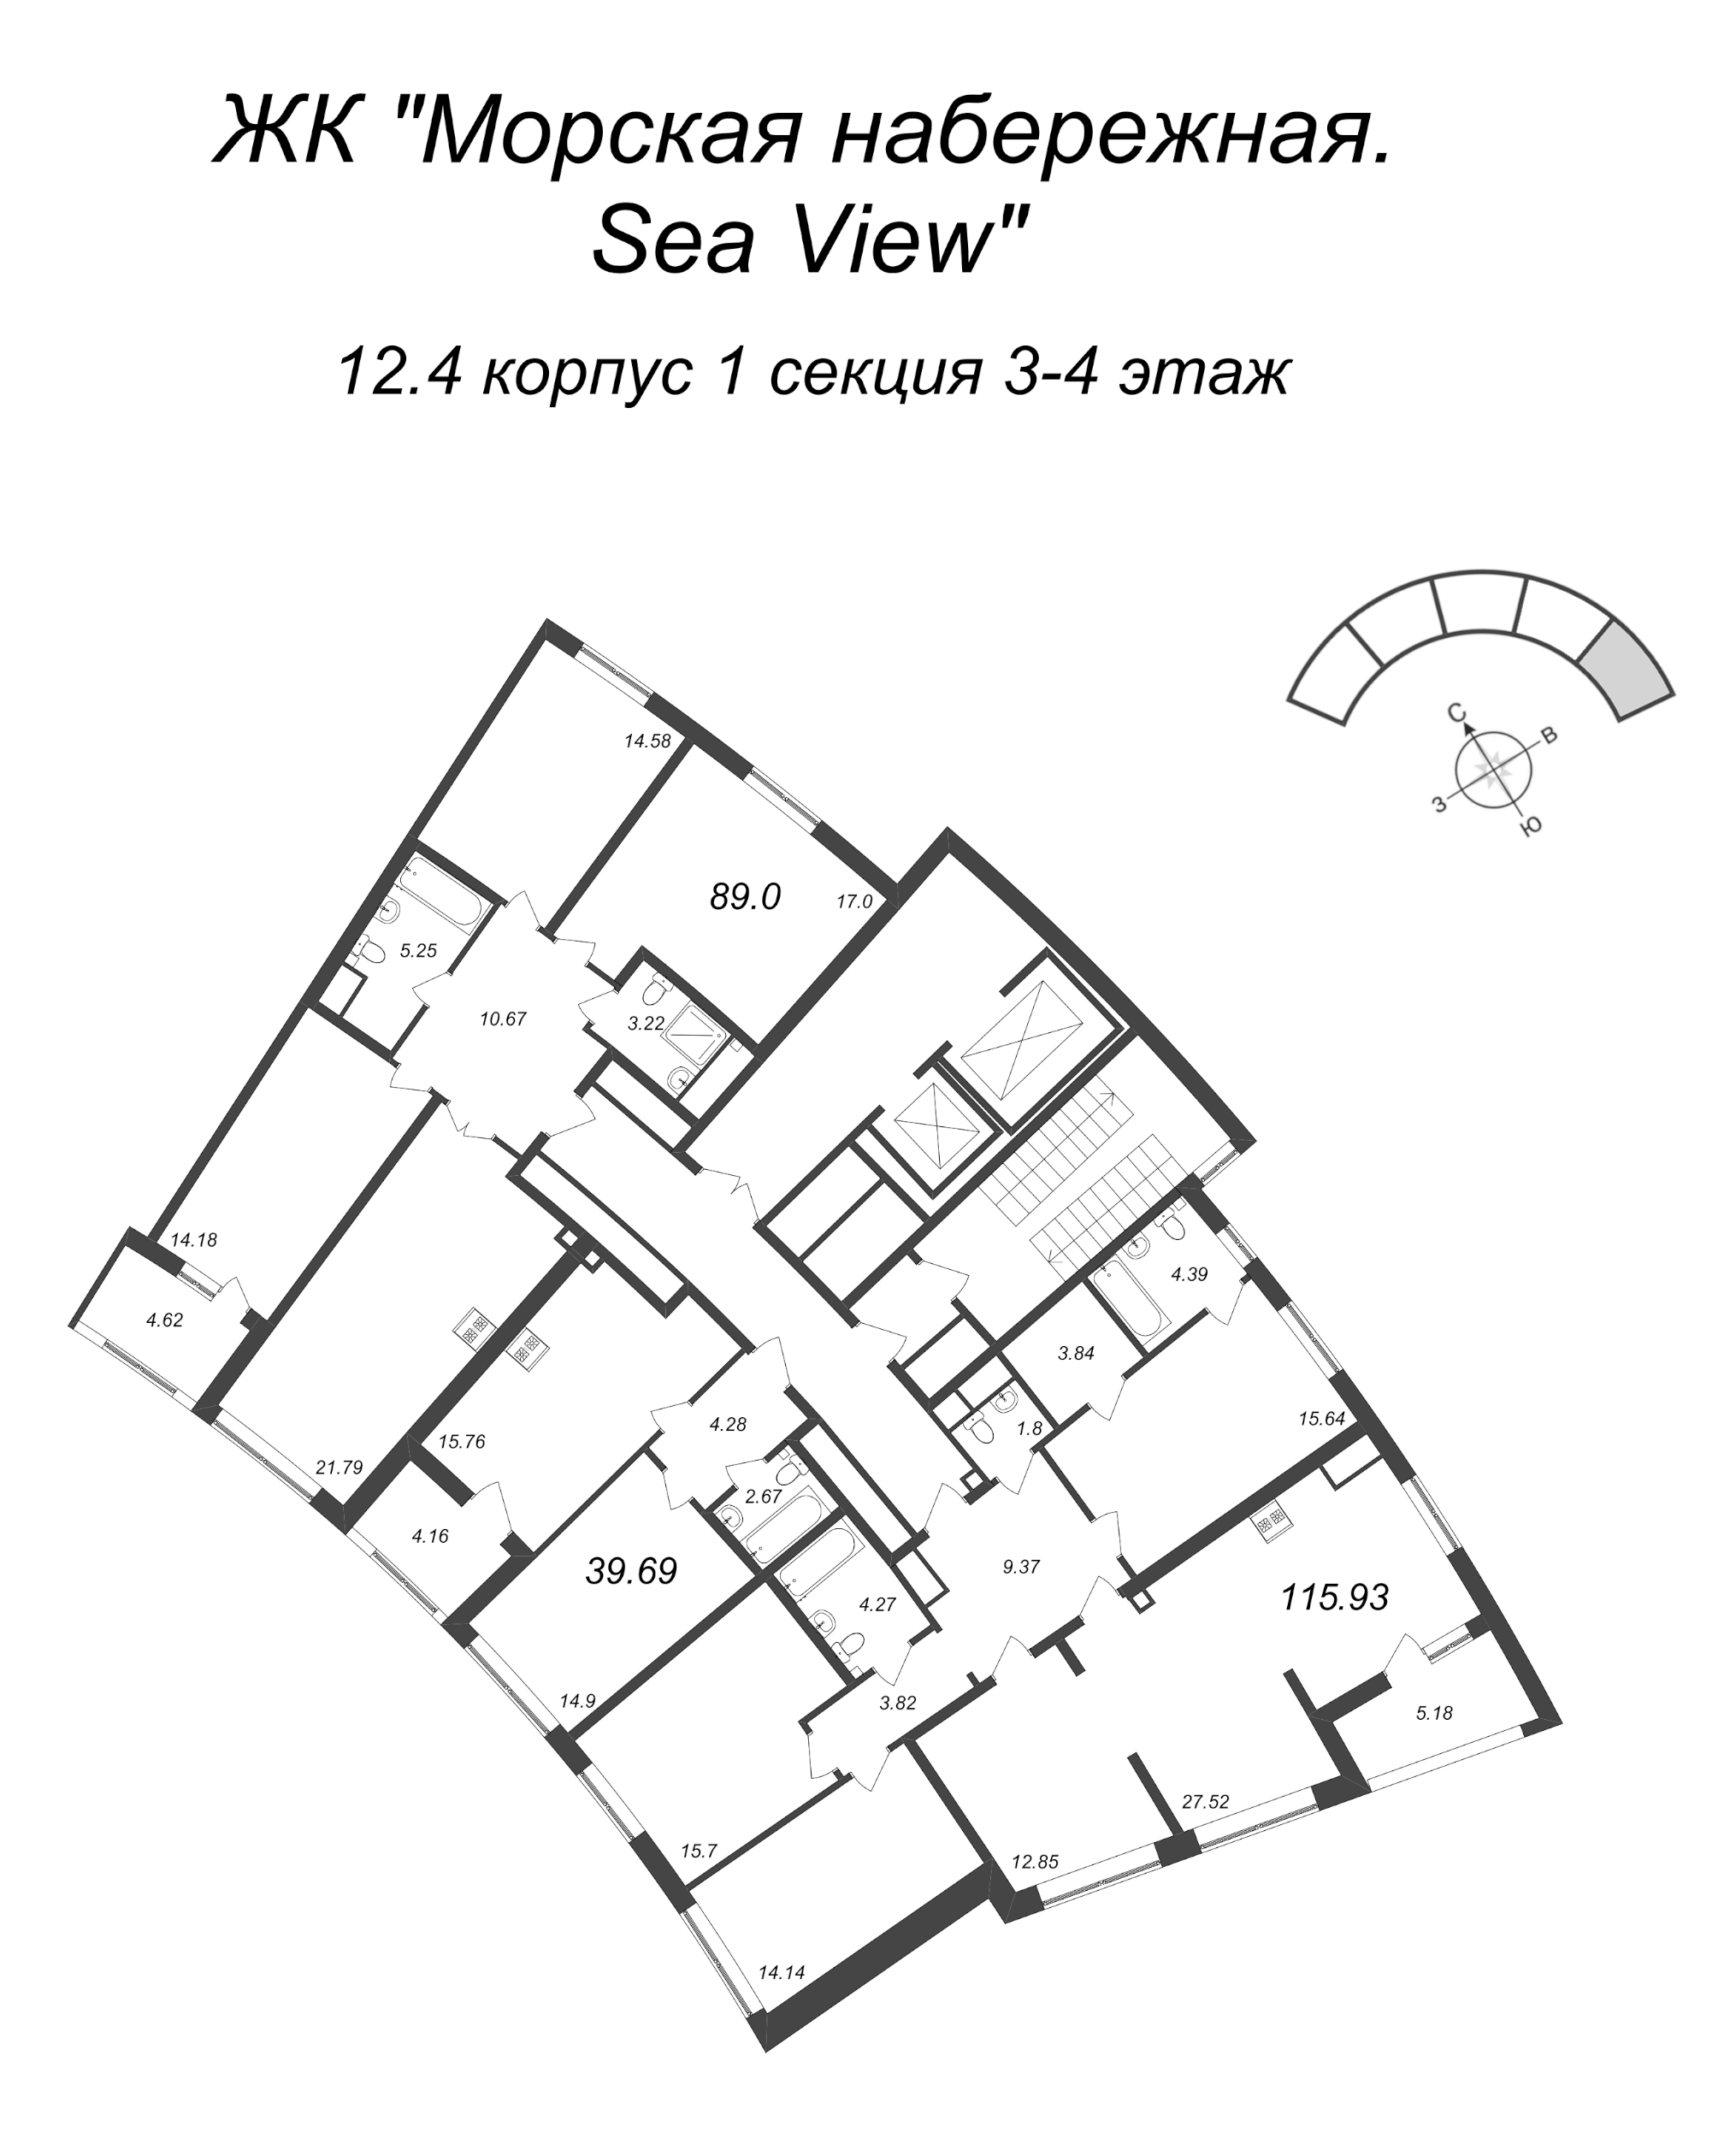 5-комнатная (Евро) квартира, 115.93 м² в ЖК "Морская набережная. SeaView" - планировка этажа